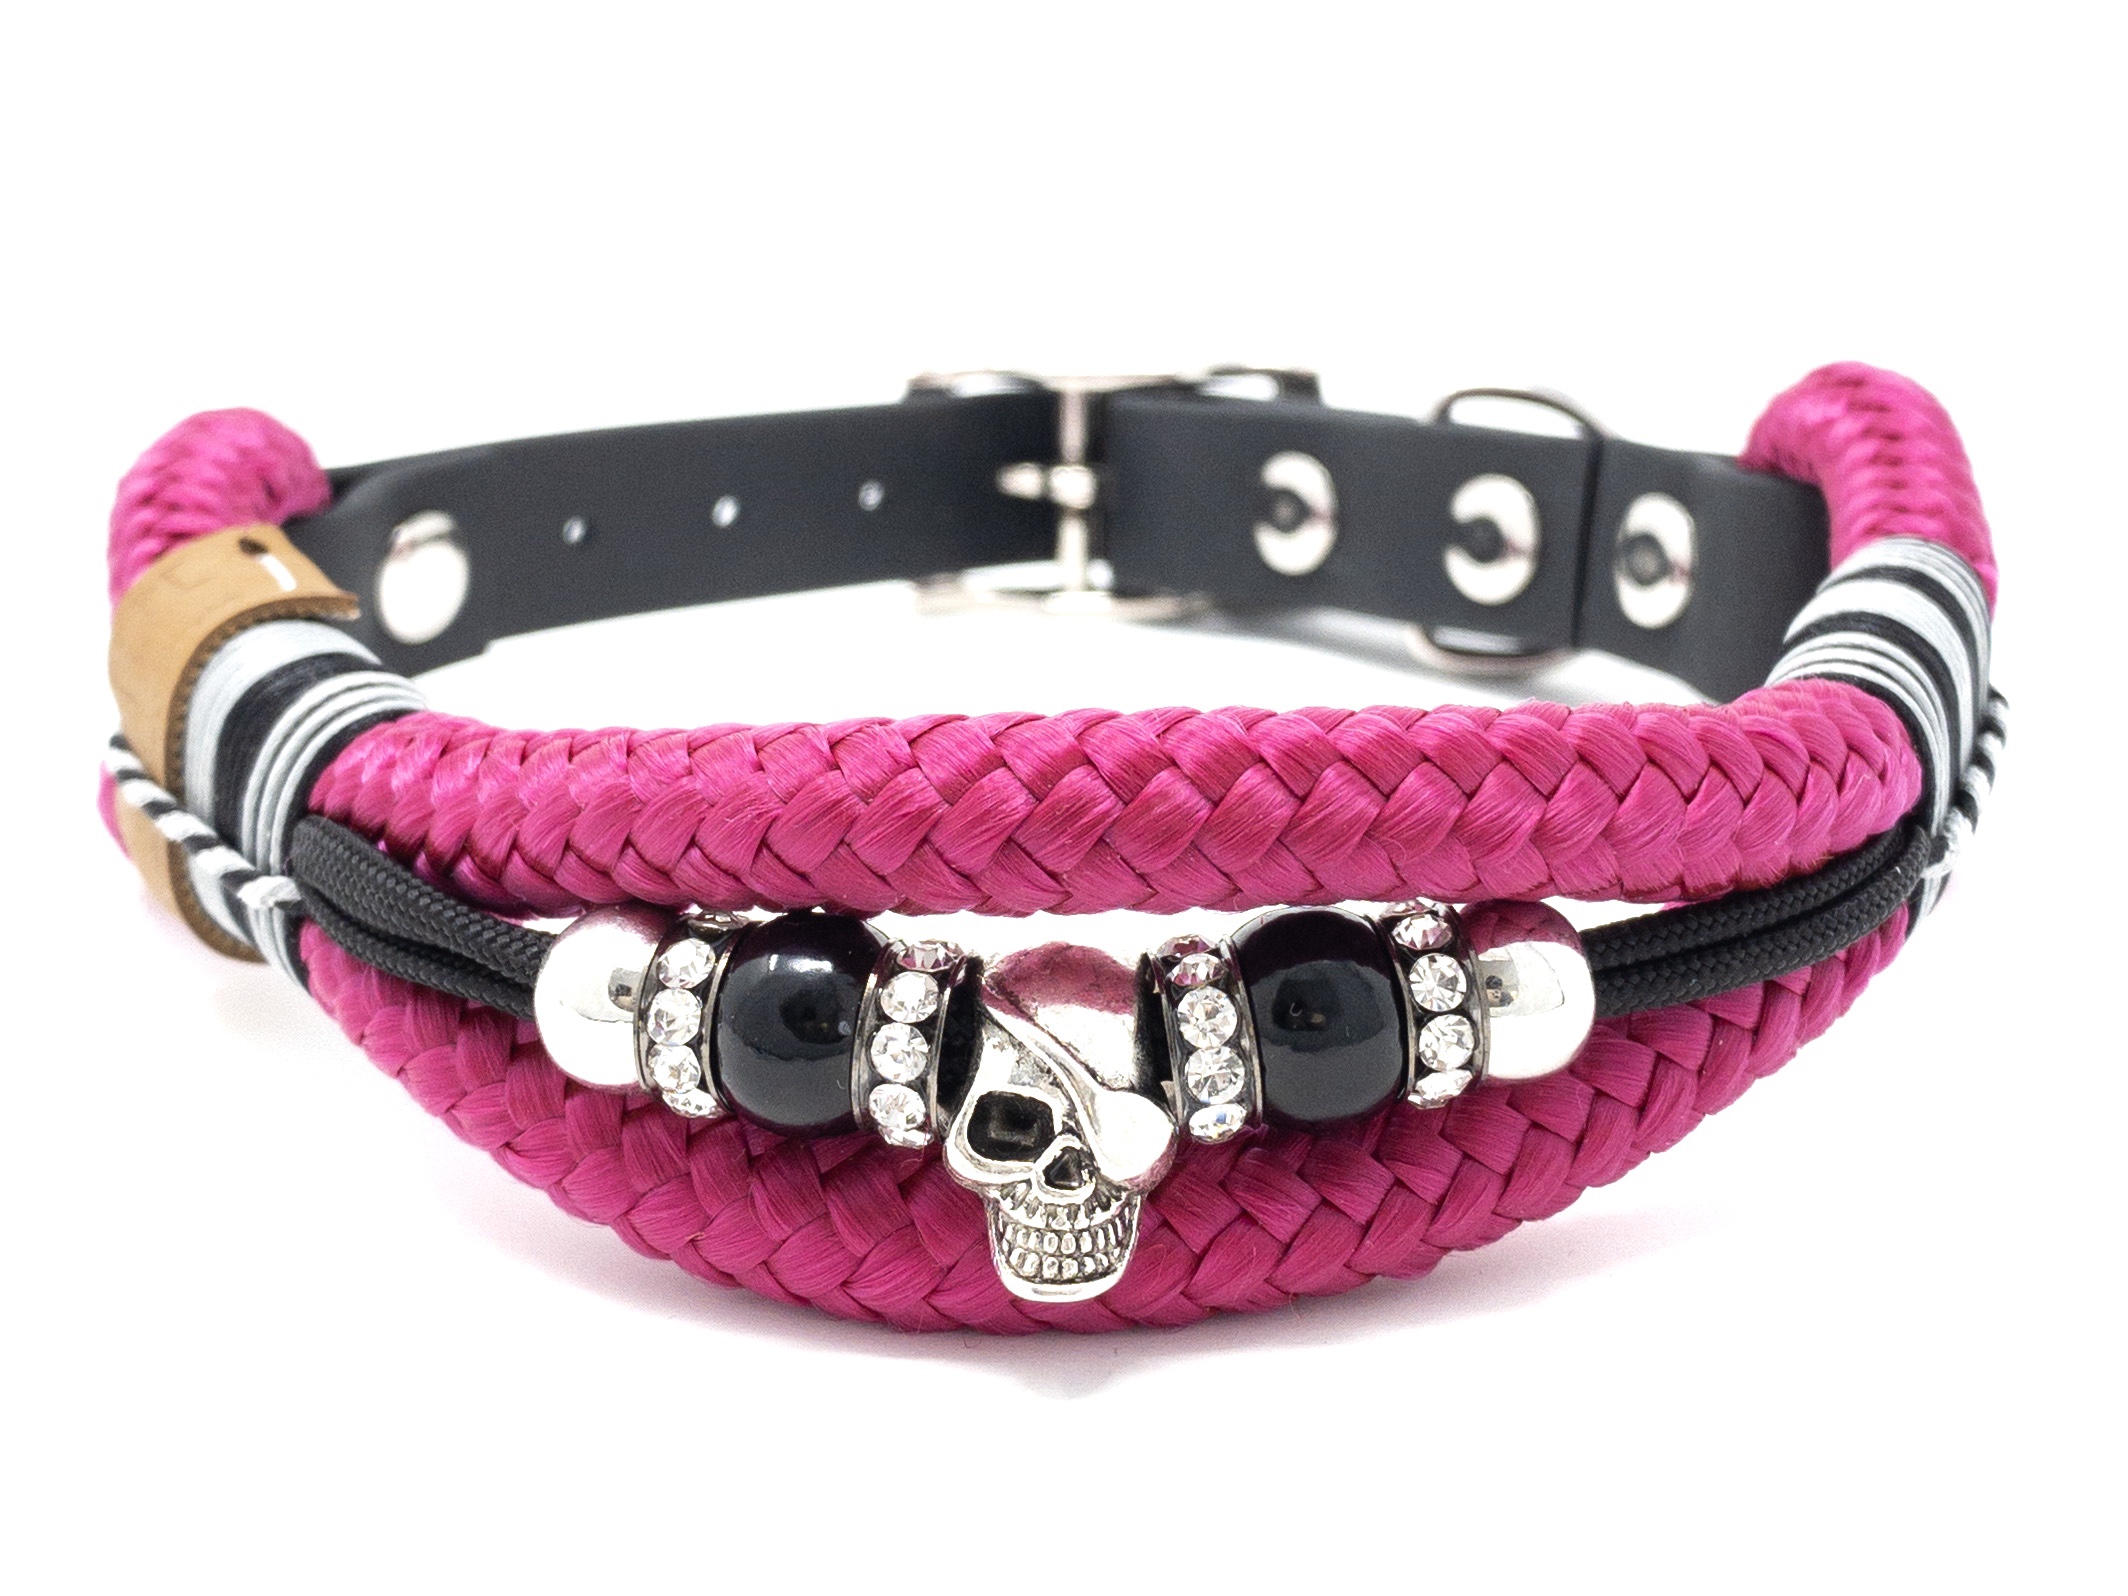 Large Hals 45 cm-66 cm verstellbare Halsbänder für Hunde Brand Umi Made Well Hundehalsband florales Design in Pink